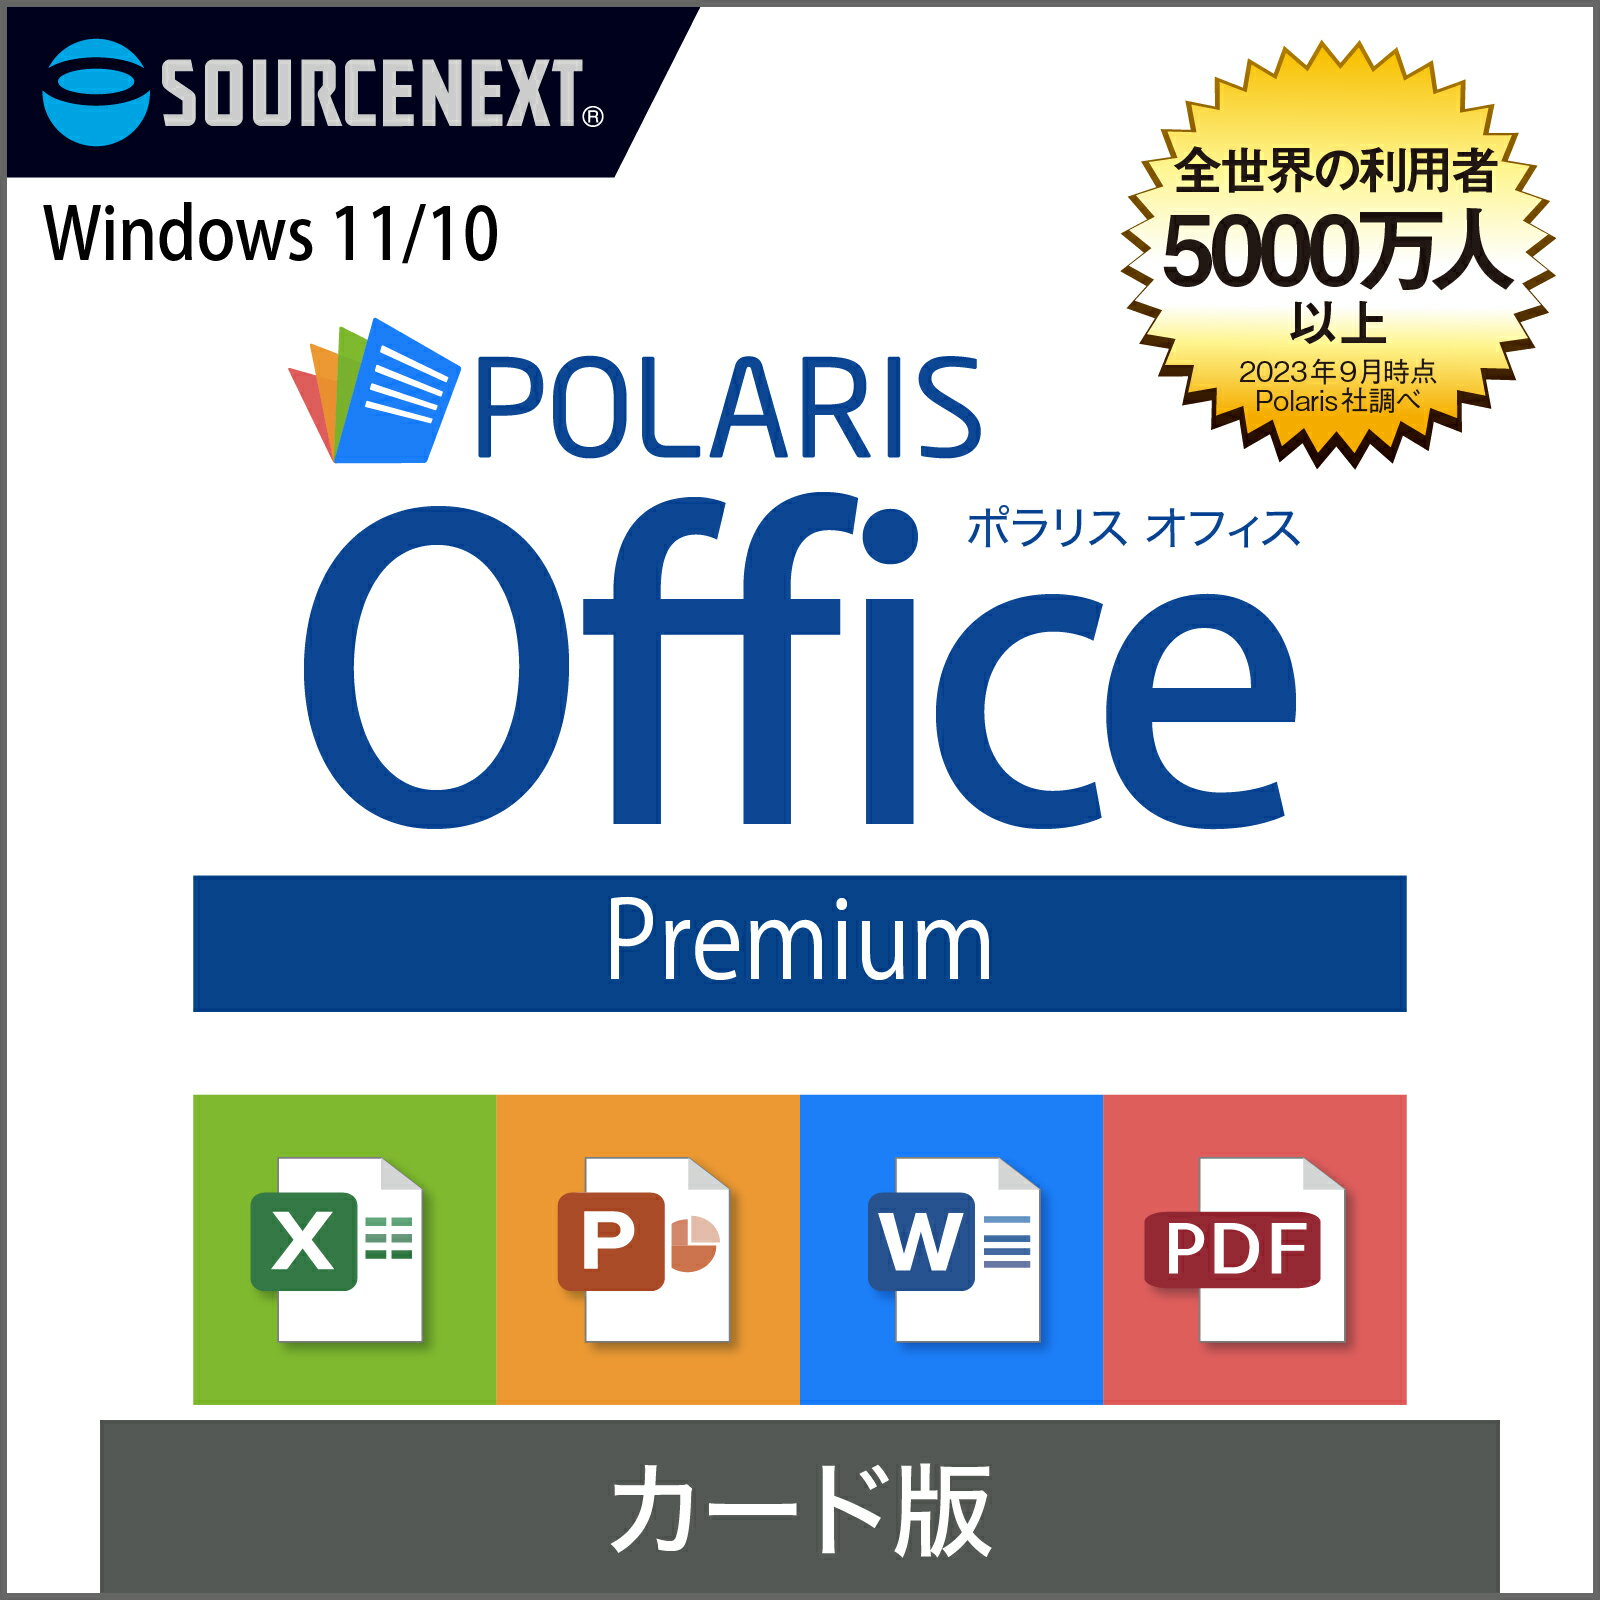 Polaris Office Premium Windows用 オフィスソフト ポラリス Microsoft Office オフィス 互換性 Excel PowerPoint Word パワーポイント エクセルソフト ワード